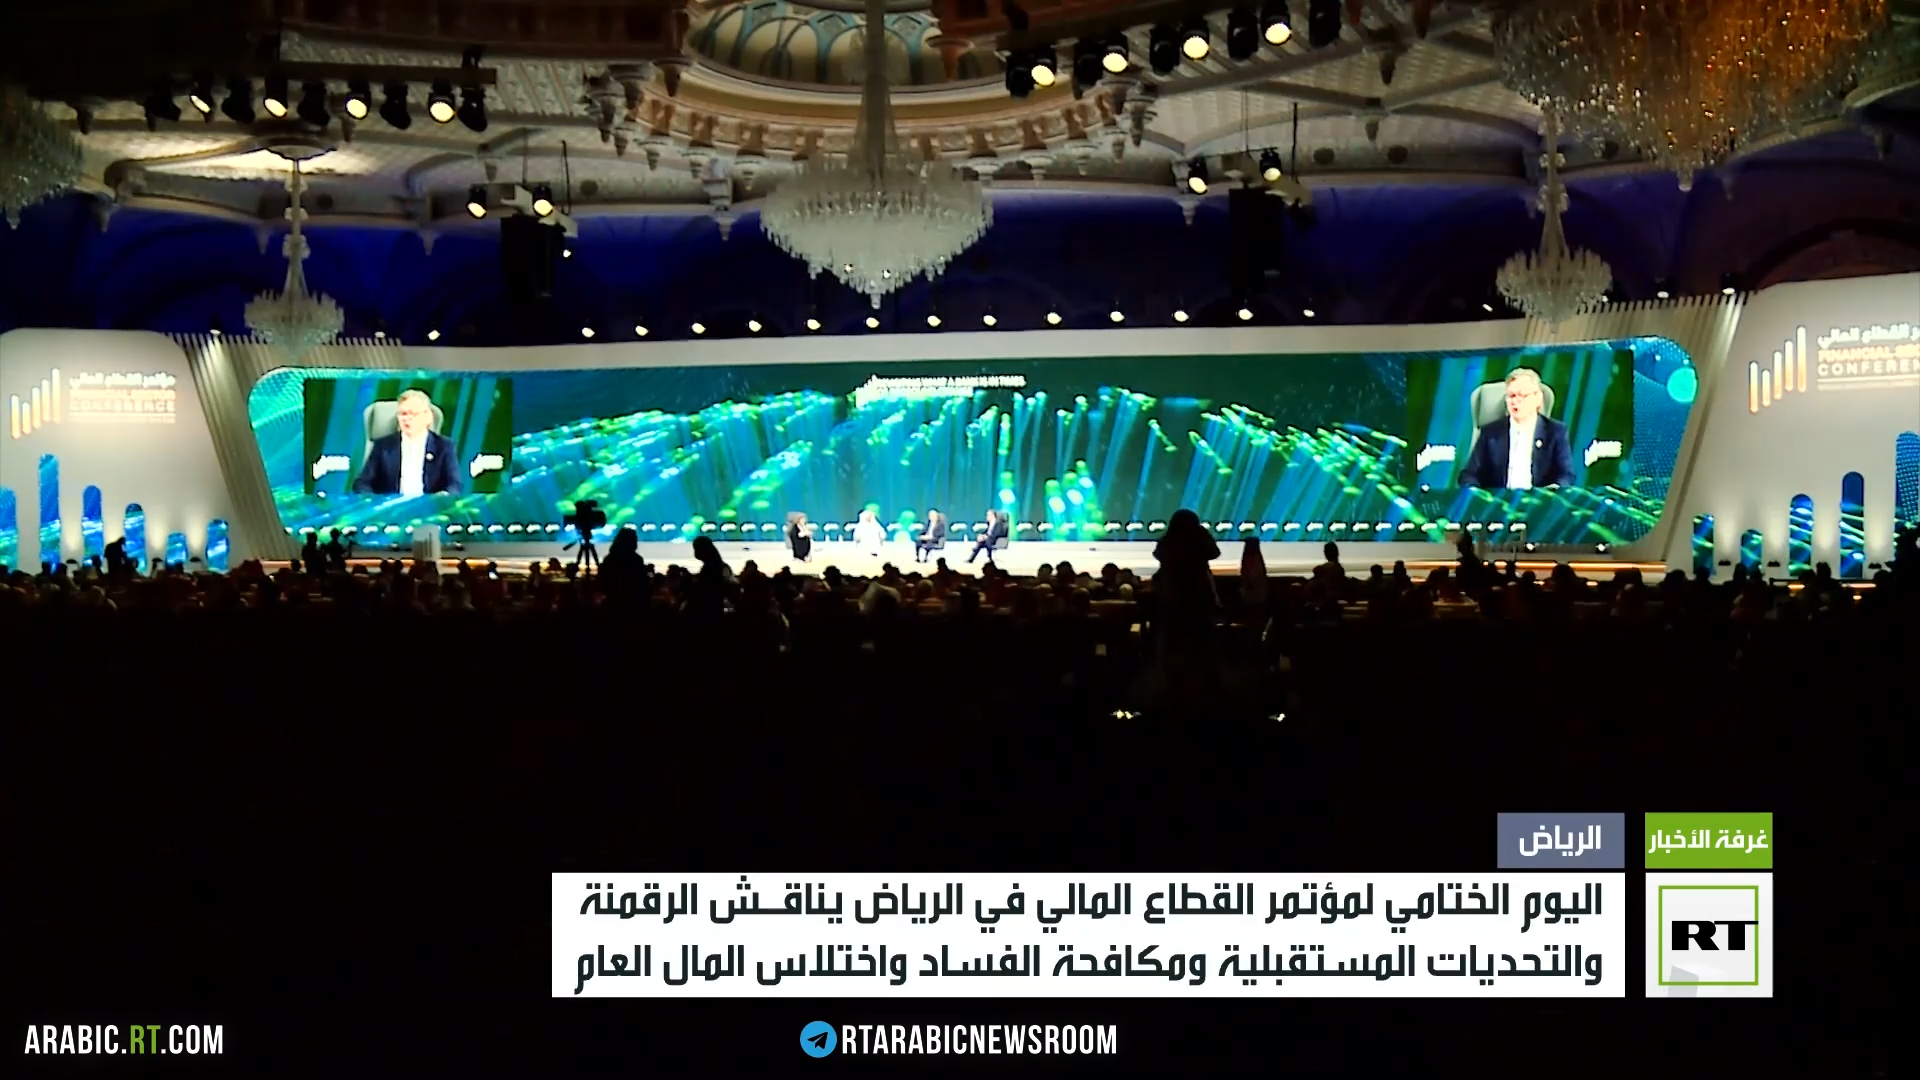 المؤتمر المالي الدولي في الرياض يختتم أعماله